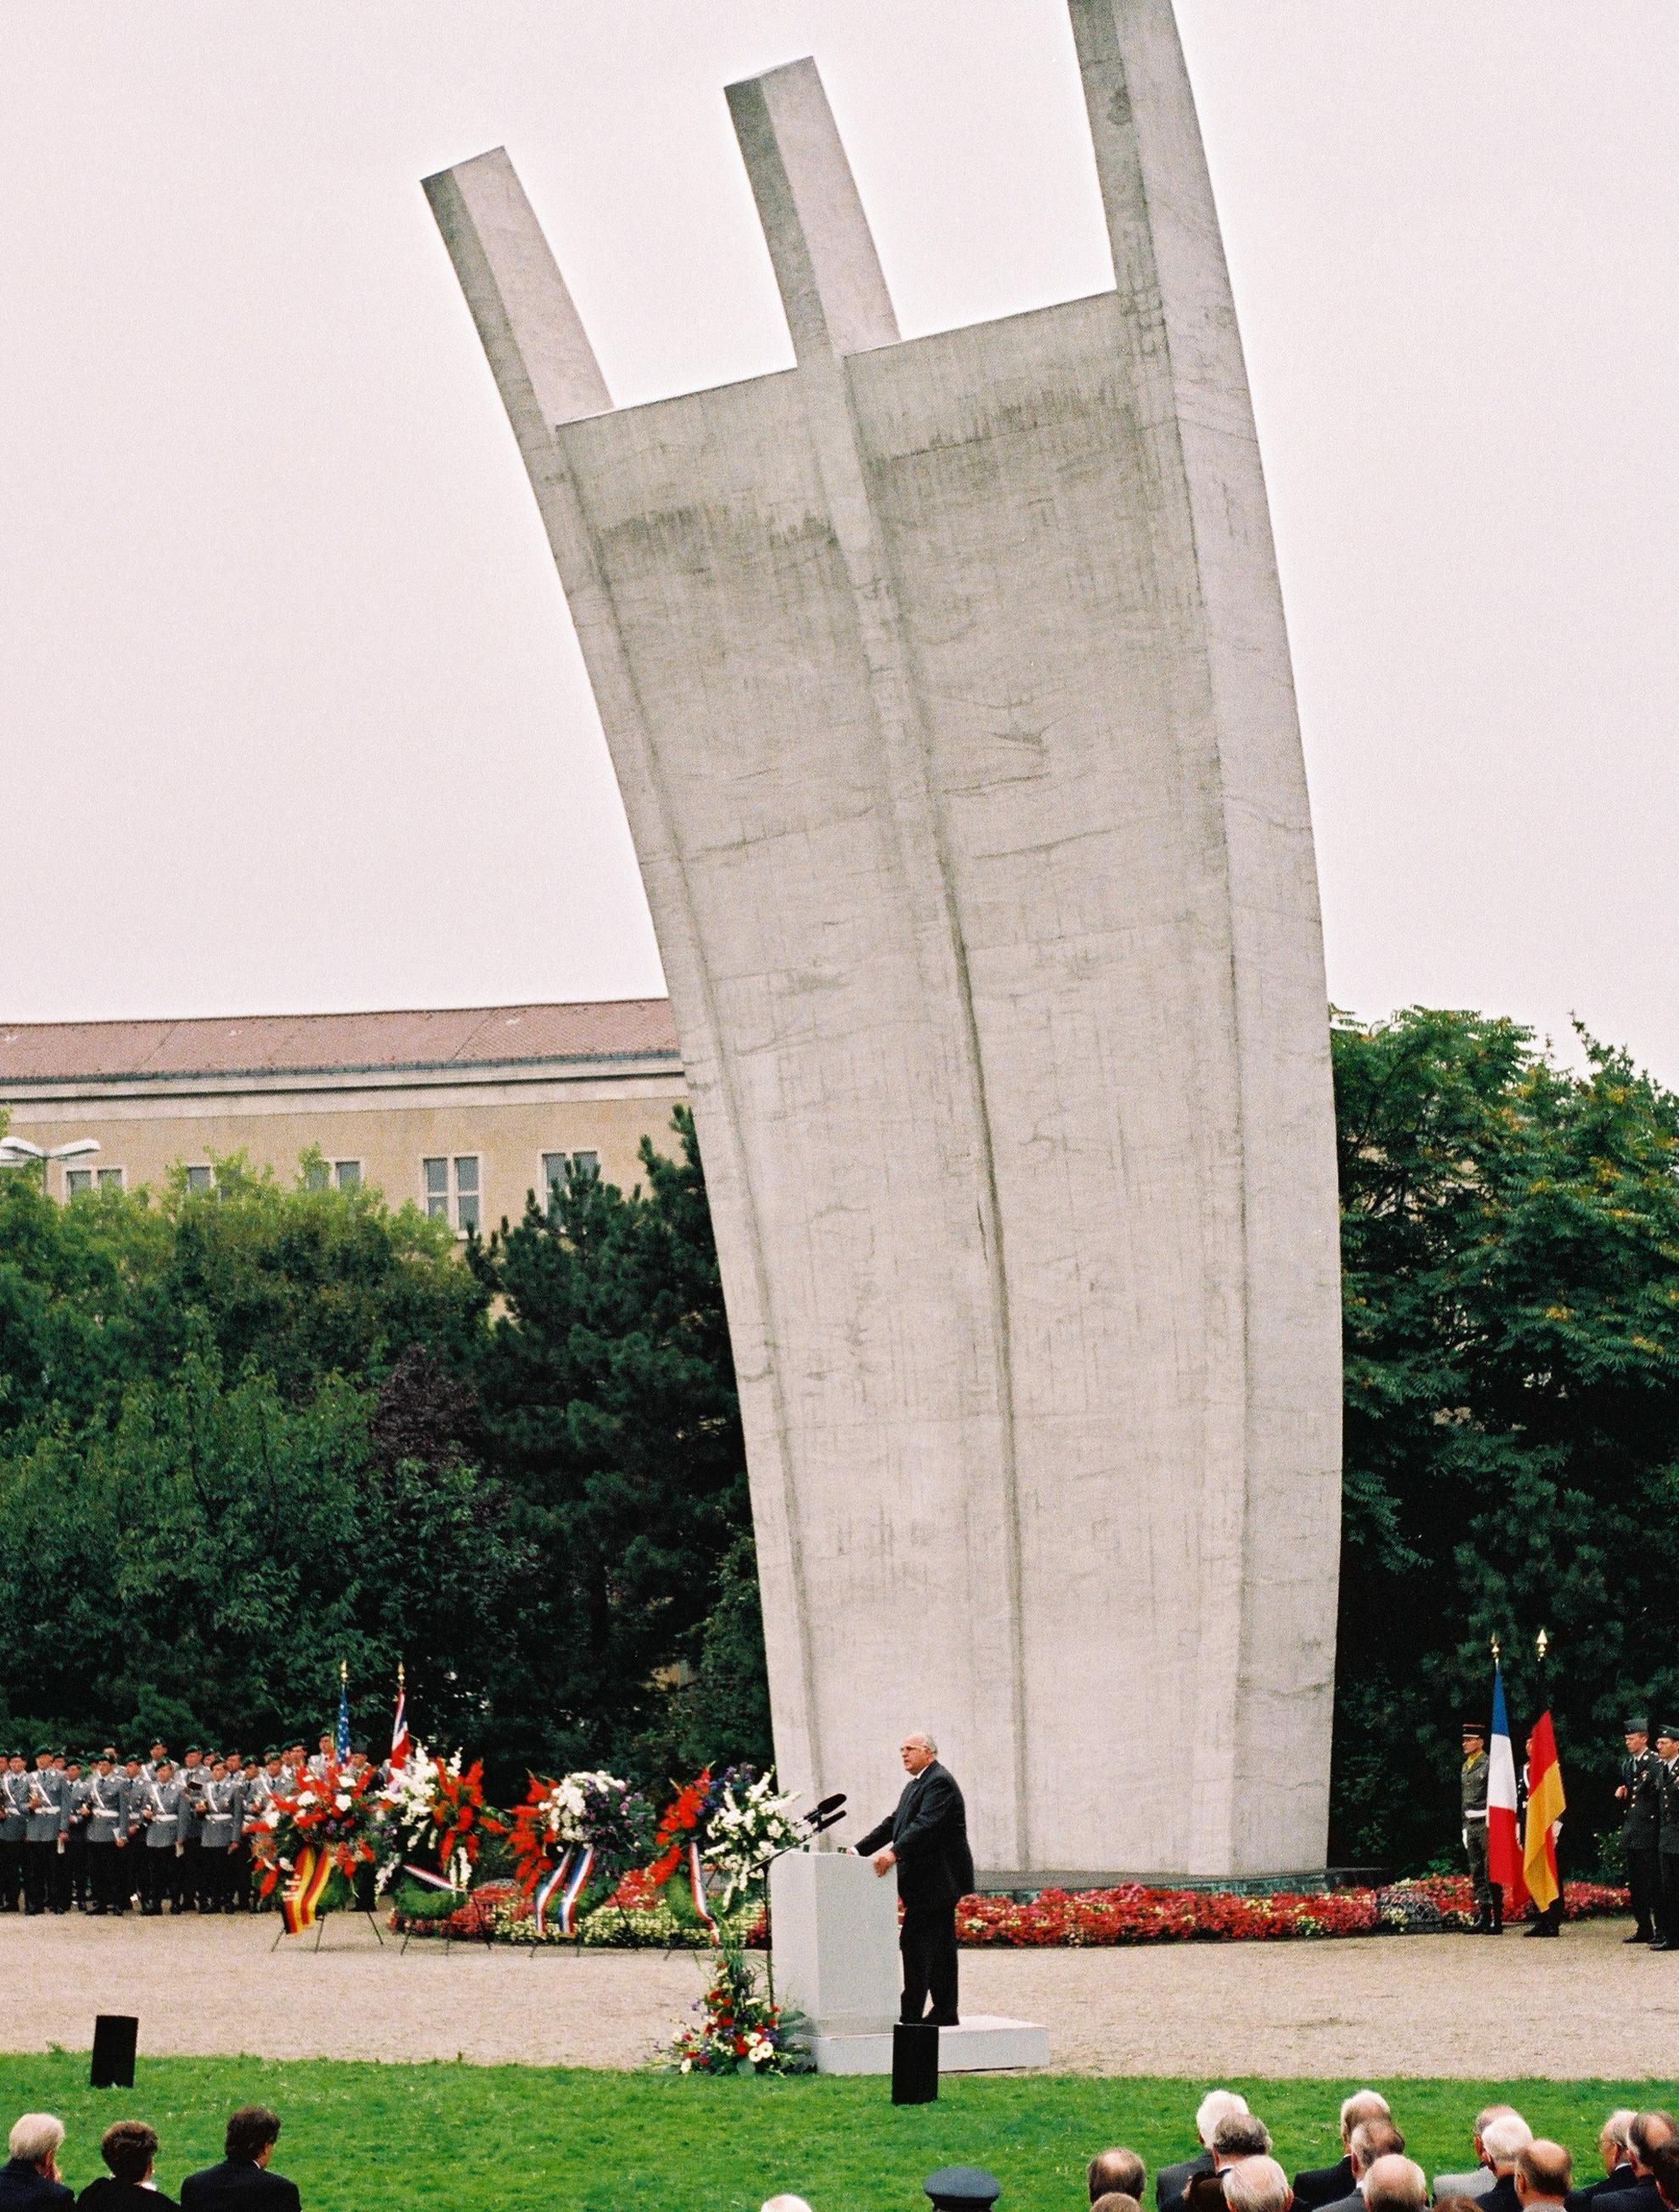 Bundeskanzler Helmut Kohl hält vor dem Luftbrückendenkmal in Berlin-Tempfelhof eine Rede. Nach 49 Jahren Anwesenheit in der Bundesrepublik Deutschland und 4 Jahre nach der Wiedervereinigung werden die Streitkräfte der Westalliierten verabschiedet.